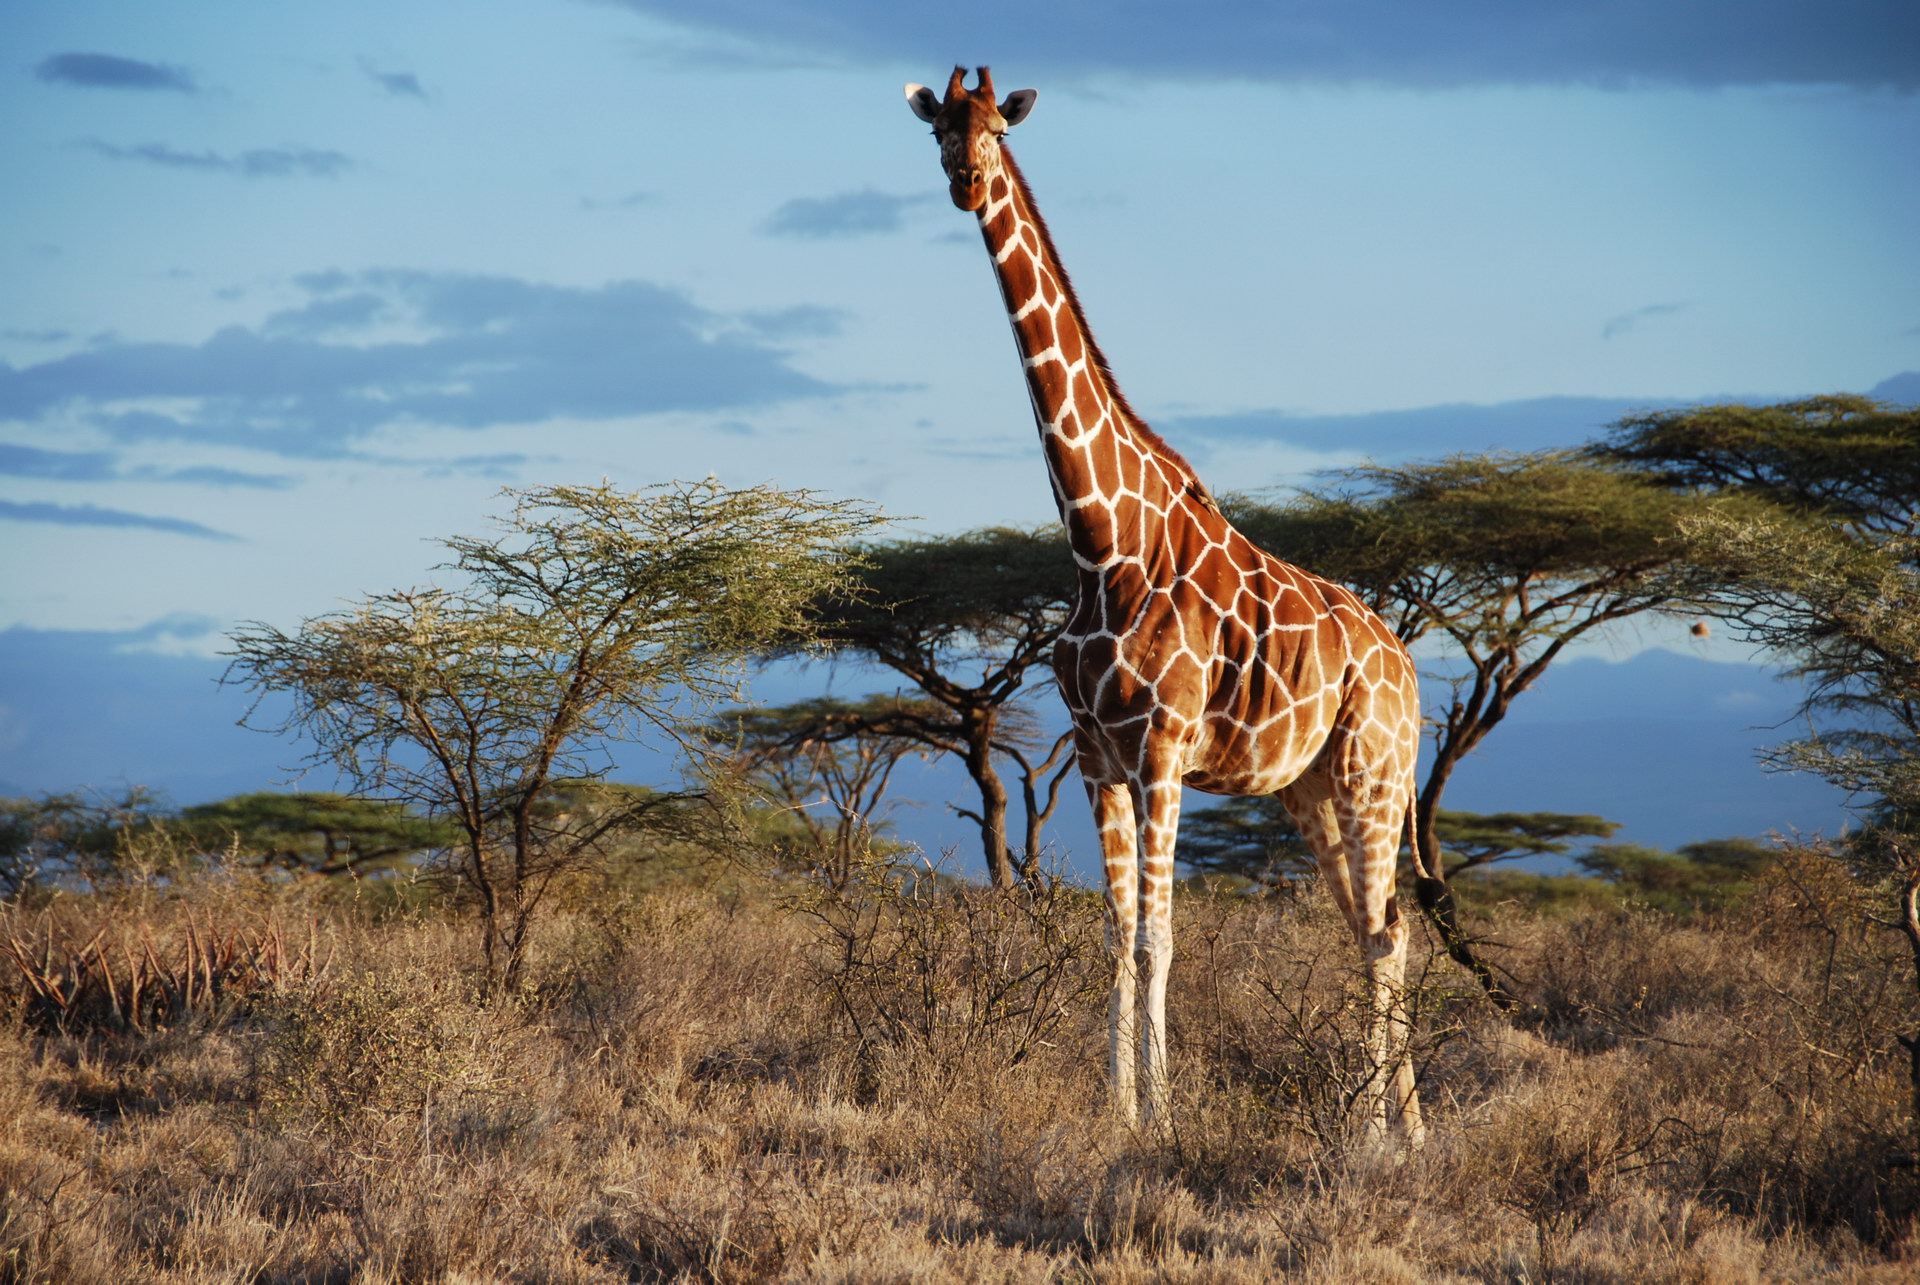 Giraffe ni savanna